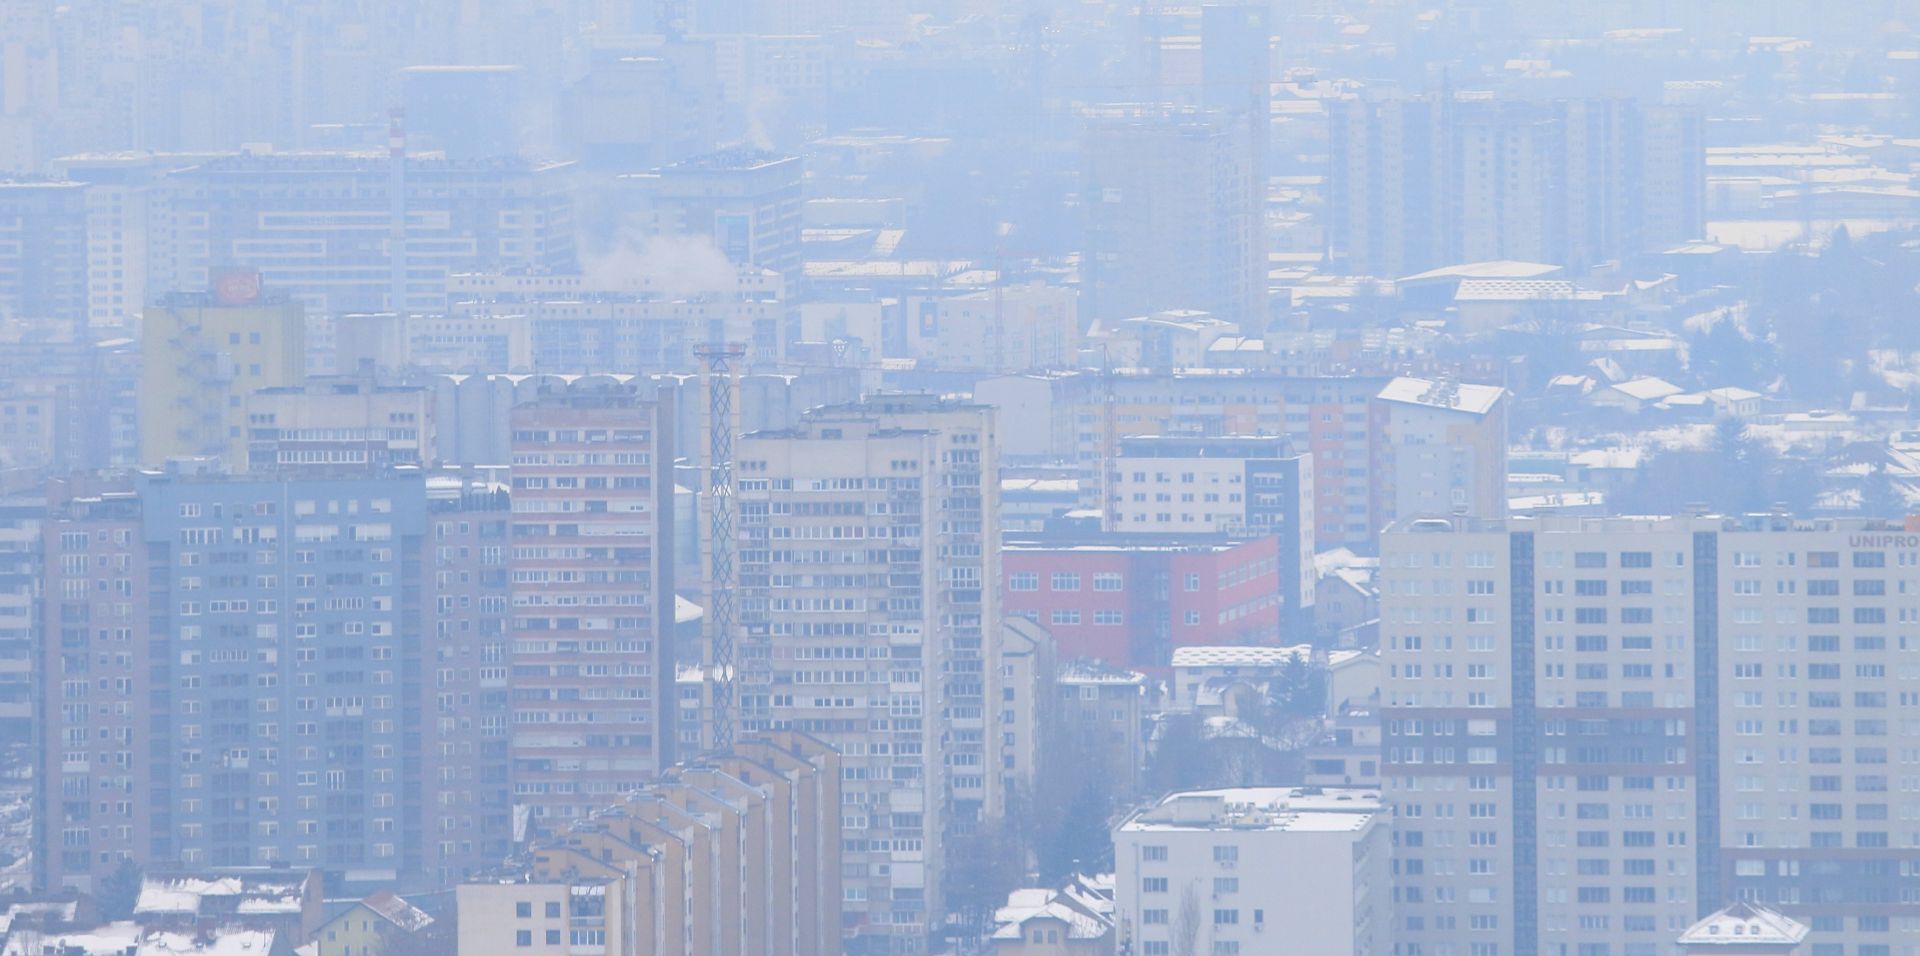 Panorama grada Sarajeva pod maglom 24.01.2019., Sarajevo, BiH - Panorama grada Sarajeva pod maglom.

Photo: Armin Durgut/PIXSELL